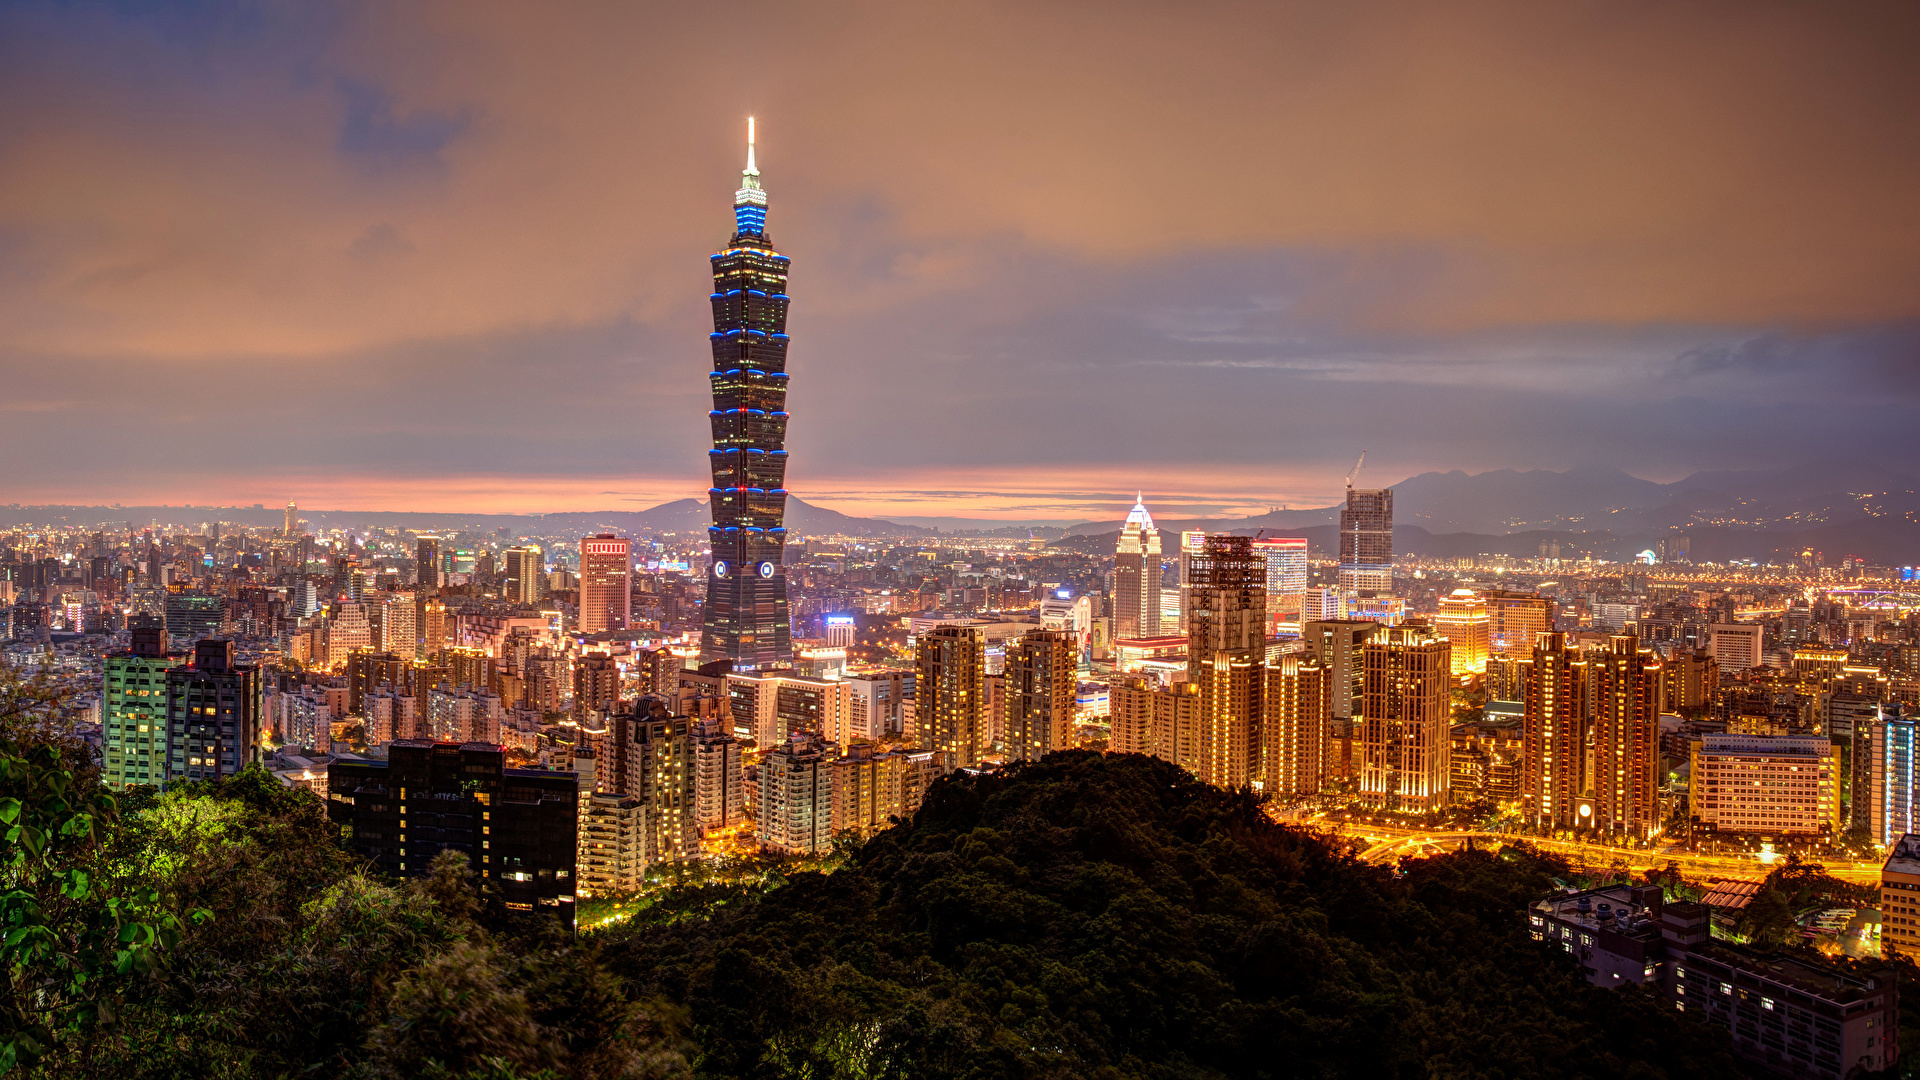 壁紙 19x1080 中華人民共和国 住宅 超高層建築物 台湾 台北市 夜 メガロポリス 都市 ダウンロード 写真